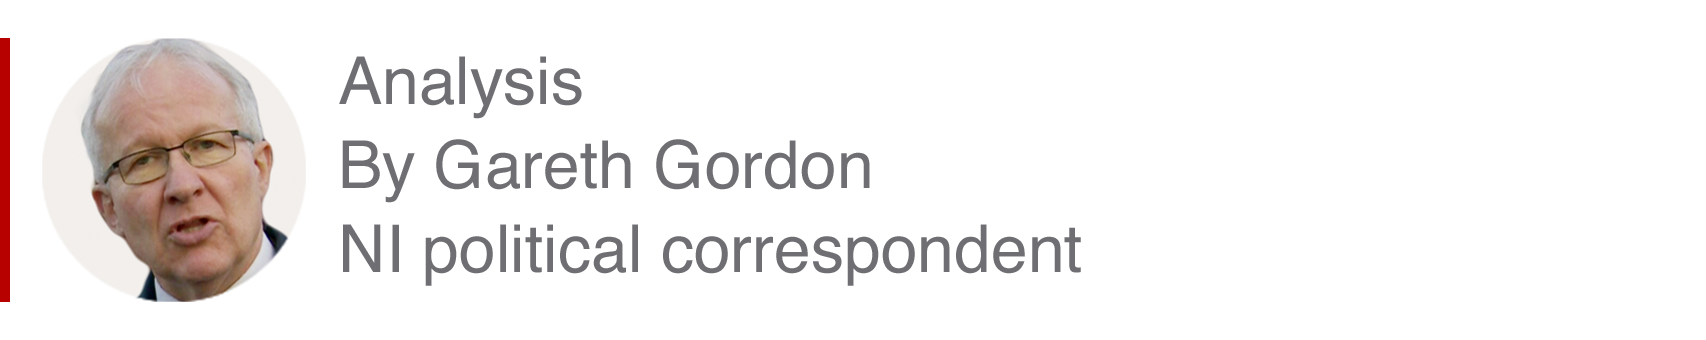 Аналитическая коробка Гарета Гордона, политического корреспондента NI